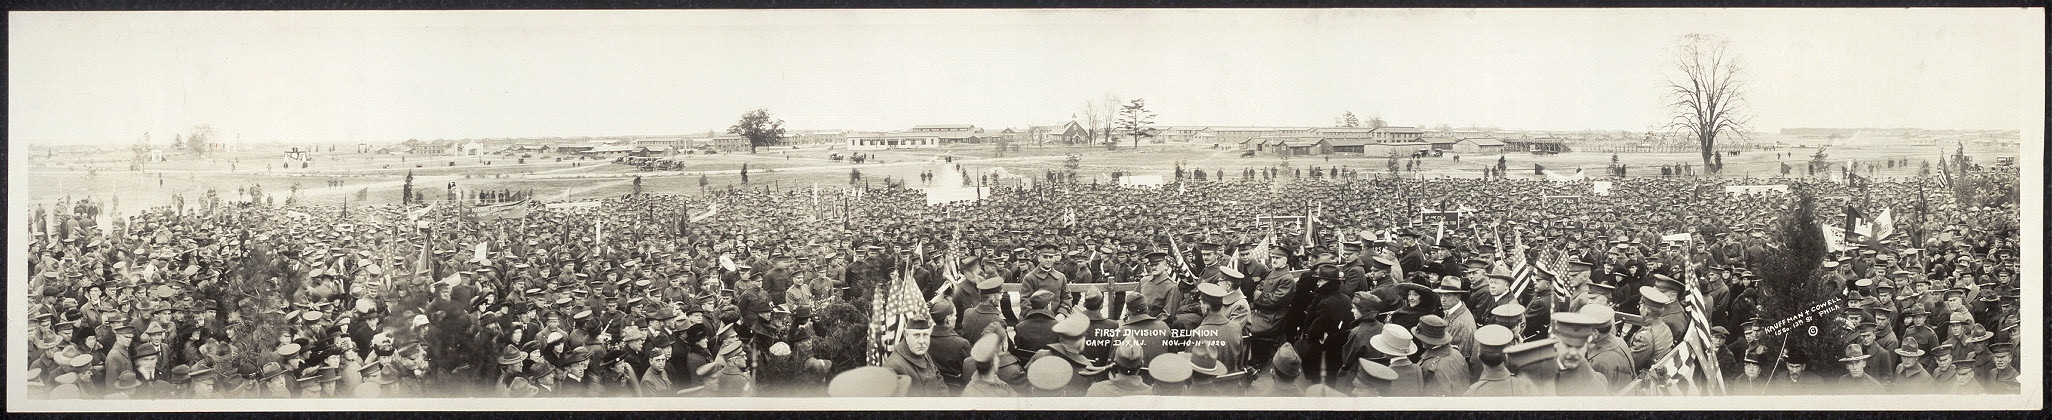 First Division reunion, Camp Dix, N.J., Nov. 10-11, 1920